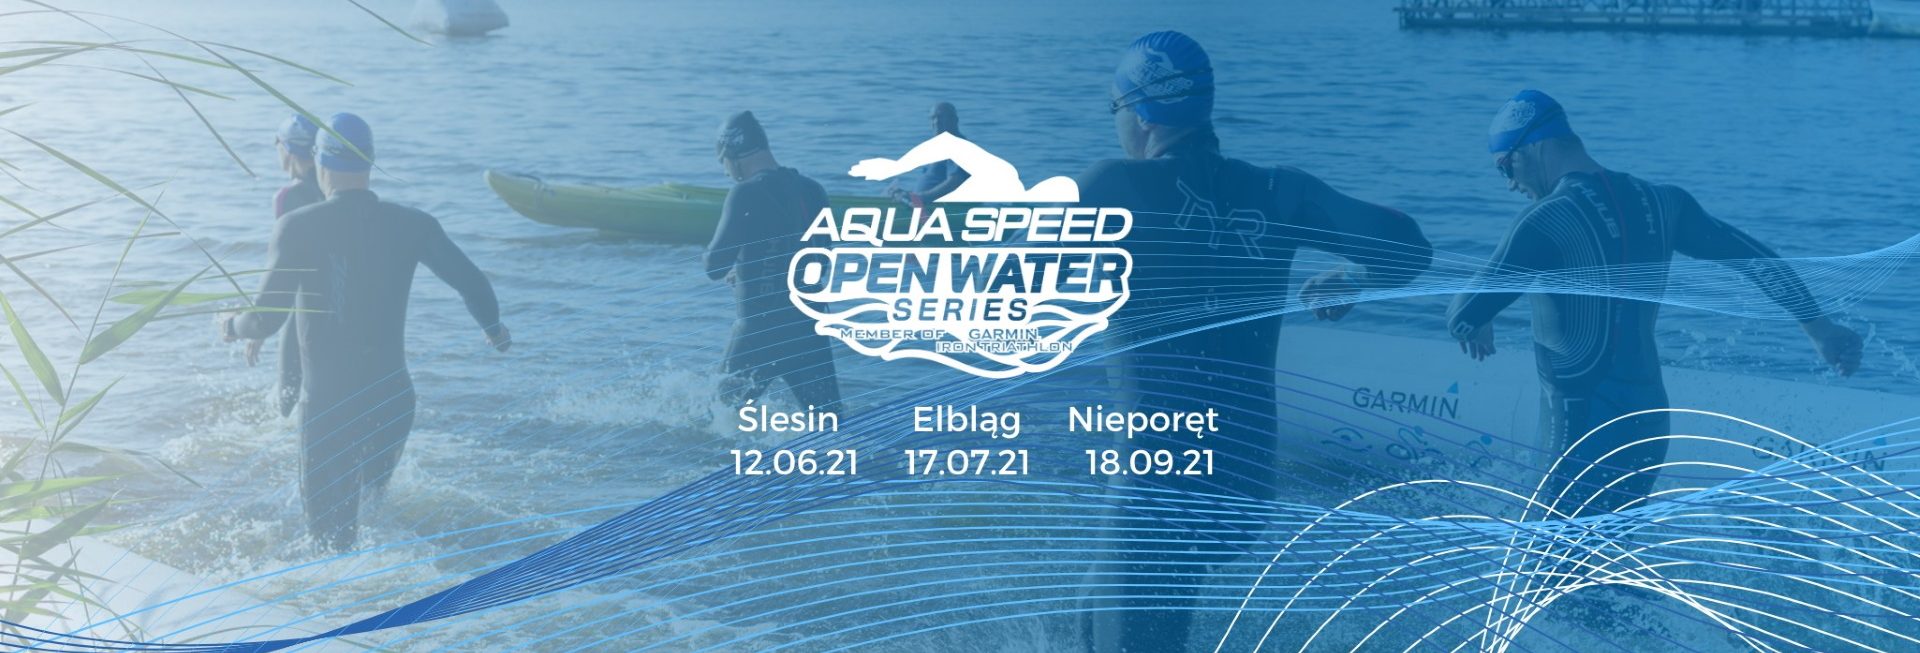 Plakat zdjęcie zapraszające do Elbląga na imprezę sportową AQUA SPEED Open Water Series Elbląg 2021. Na zdjęciu zawodnicy startujący w zawodach wbiegający do wody. 